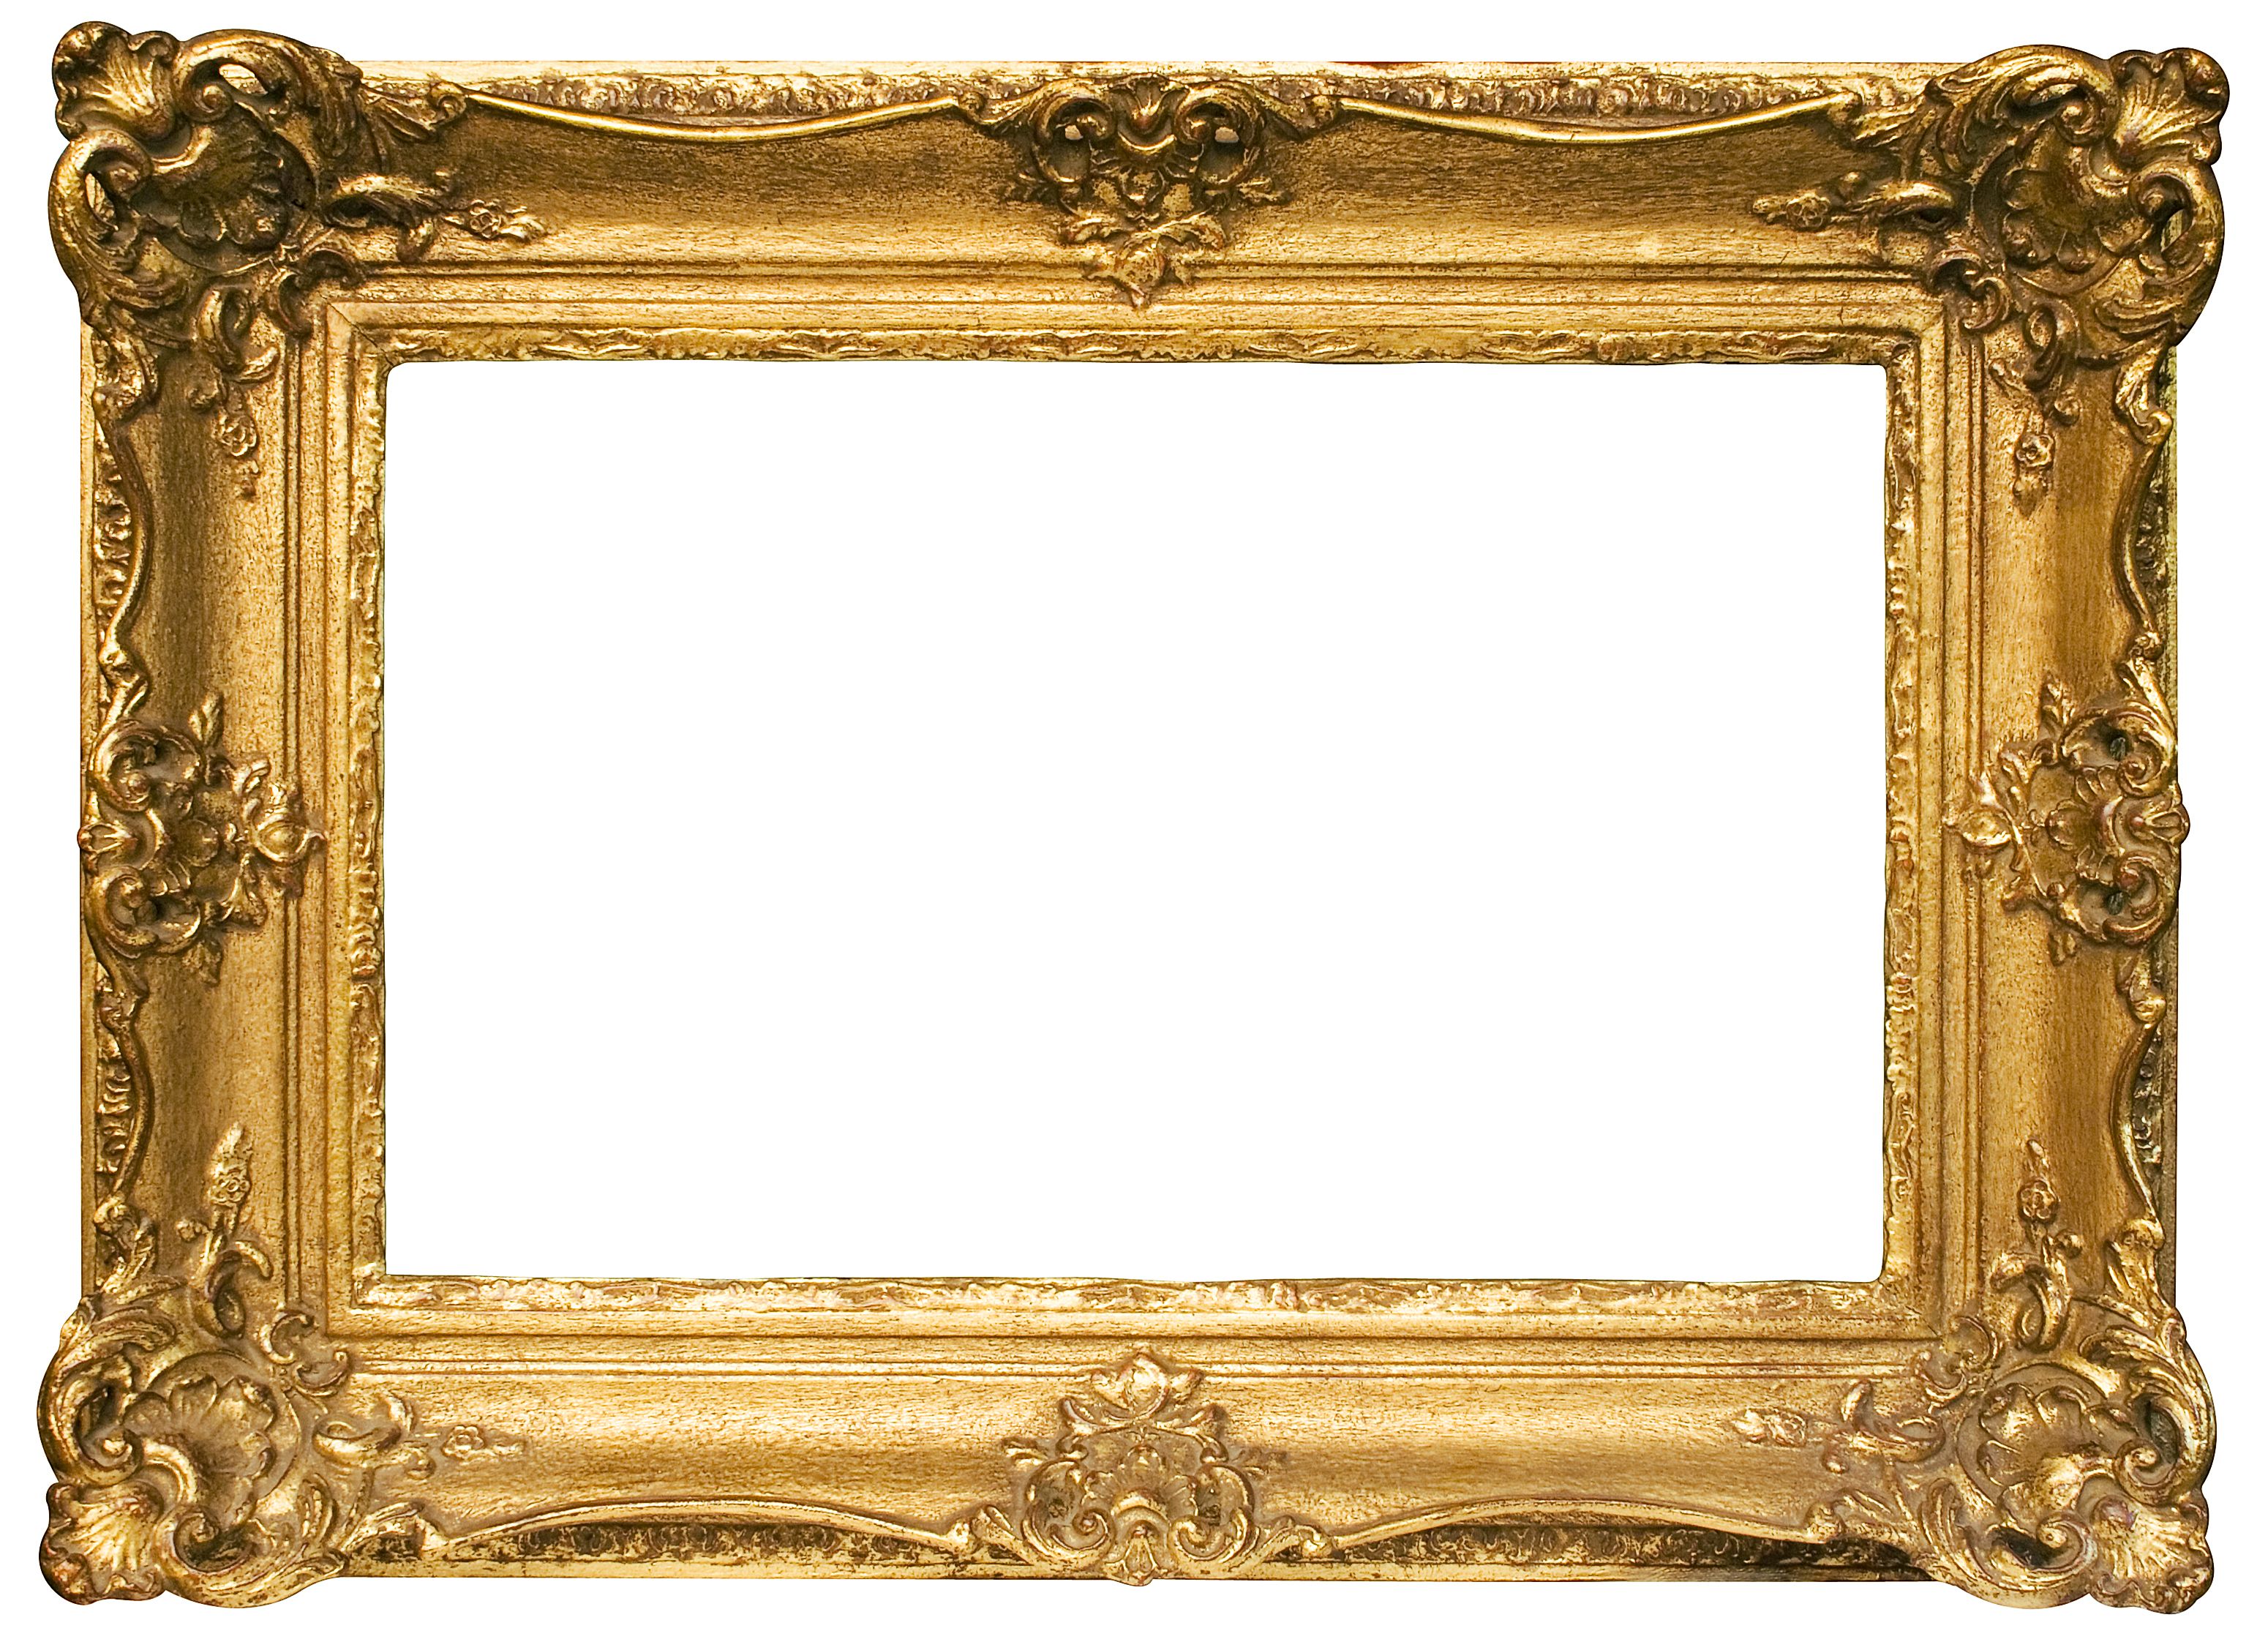 background frame gold png transparent background free download 28917 freeiconspng background frame gold png transparent